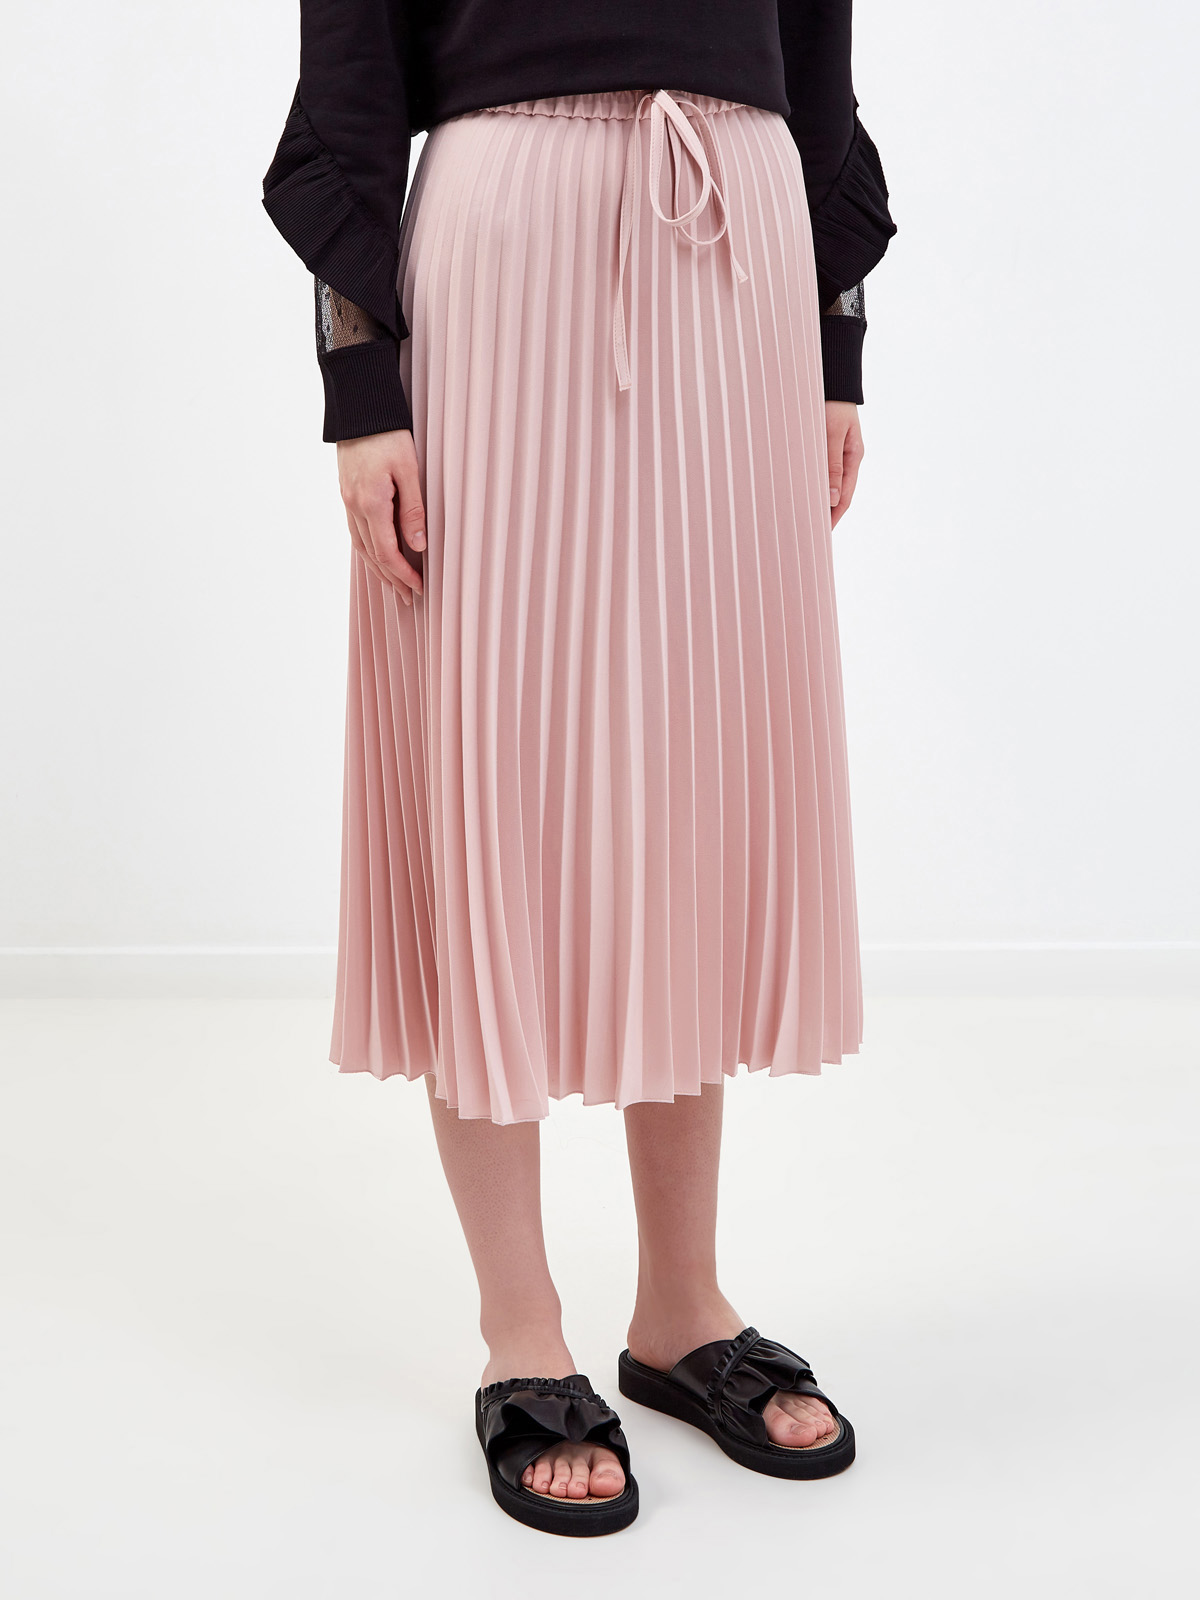 Свободная юбка-плиссе из струящегося крепа REDVALENTINO, цвет розовый, размер M;L;S - фото 3